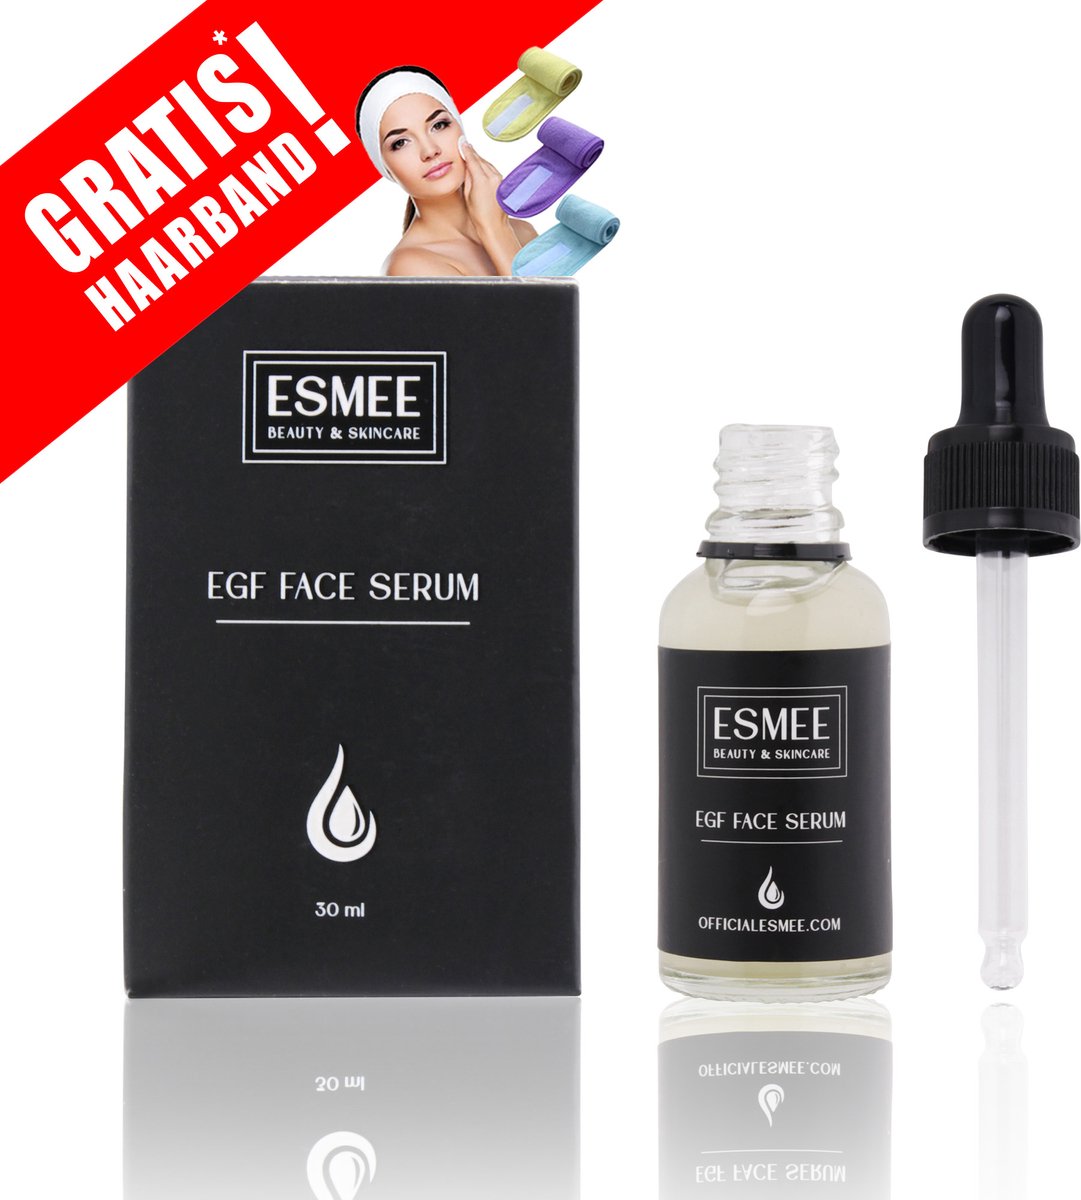 Official Esmee-EGF Face Serum-Gezicht serum - Skincare - Verzorgende serum - Huid serum vrouwen - Huid serum mannen - Verzorgende werking-Droge huid - Gevoelige huid - 30ML